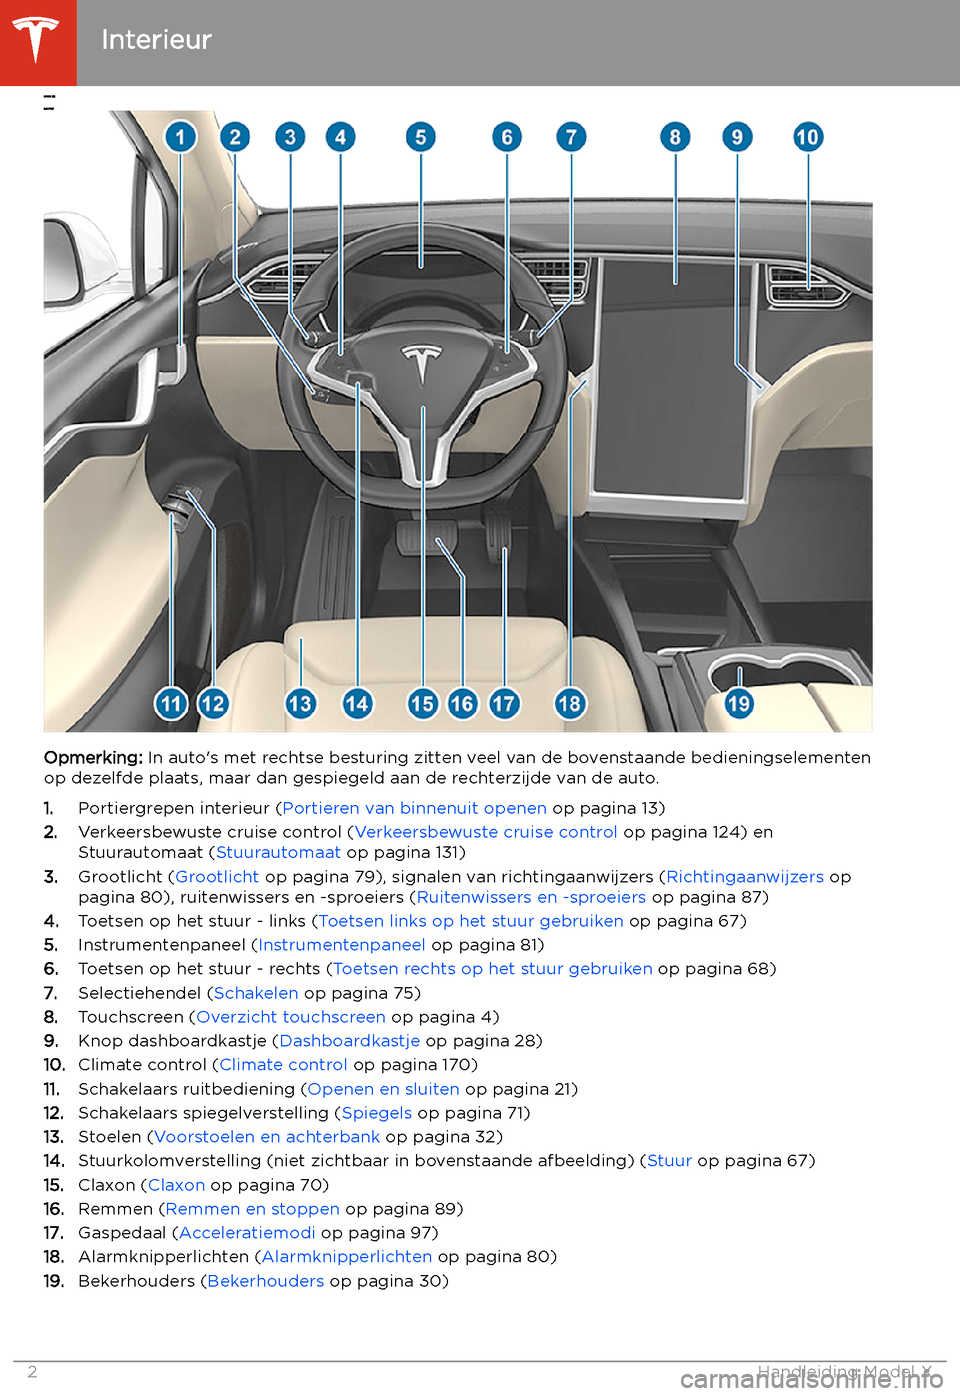 TESLA MODEL X 2020  Handleiding (in Dutch)  Overzicht
Interieur
Opmerking: In aut
os met rechtse besturing zitten veel van de bovenstaande bedieningselementen
op dezelfde plaats, maar dan gespiegeld aan de rechterzijde van de auto.
1. Portierg